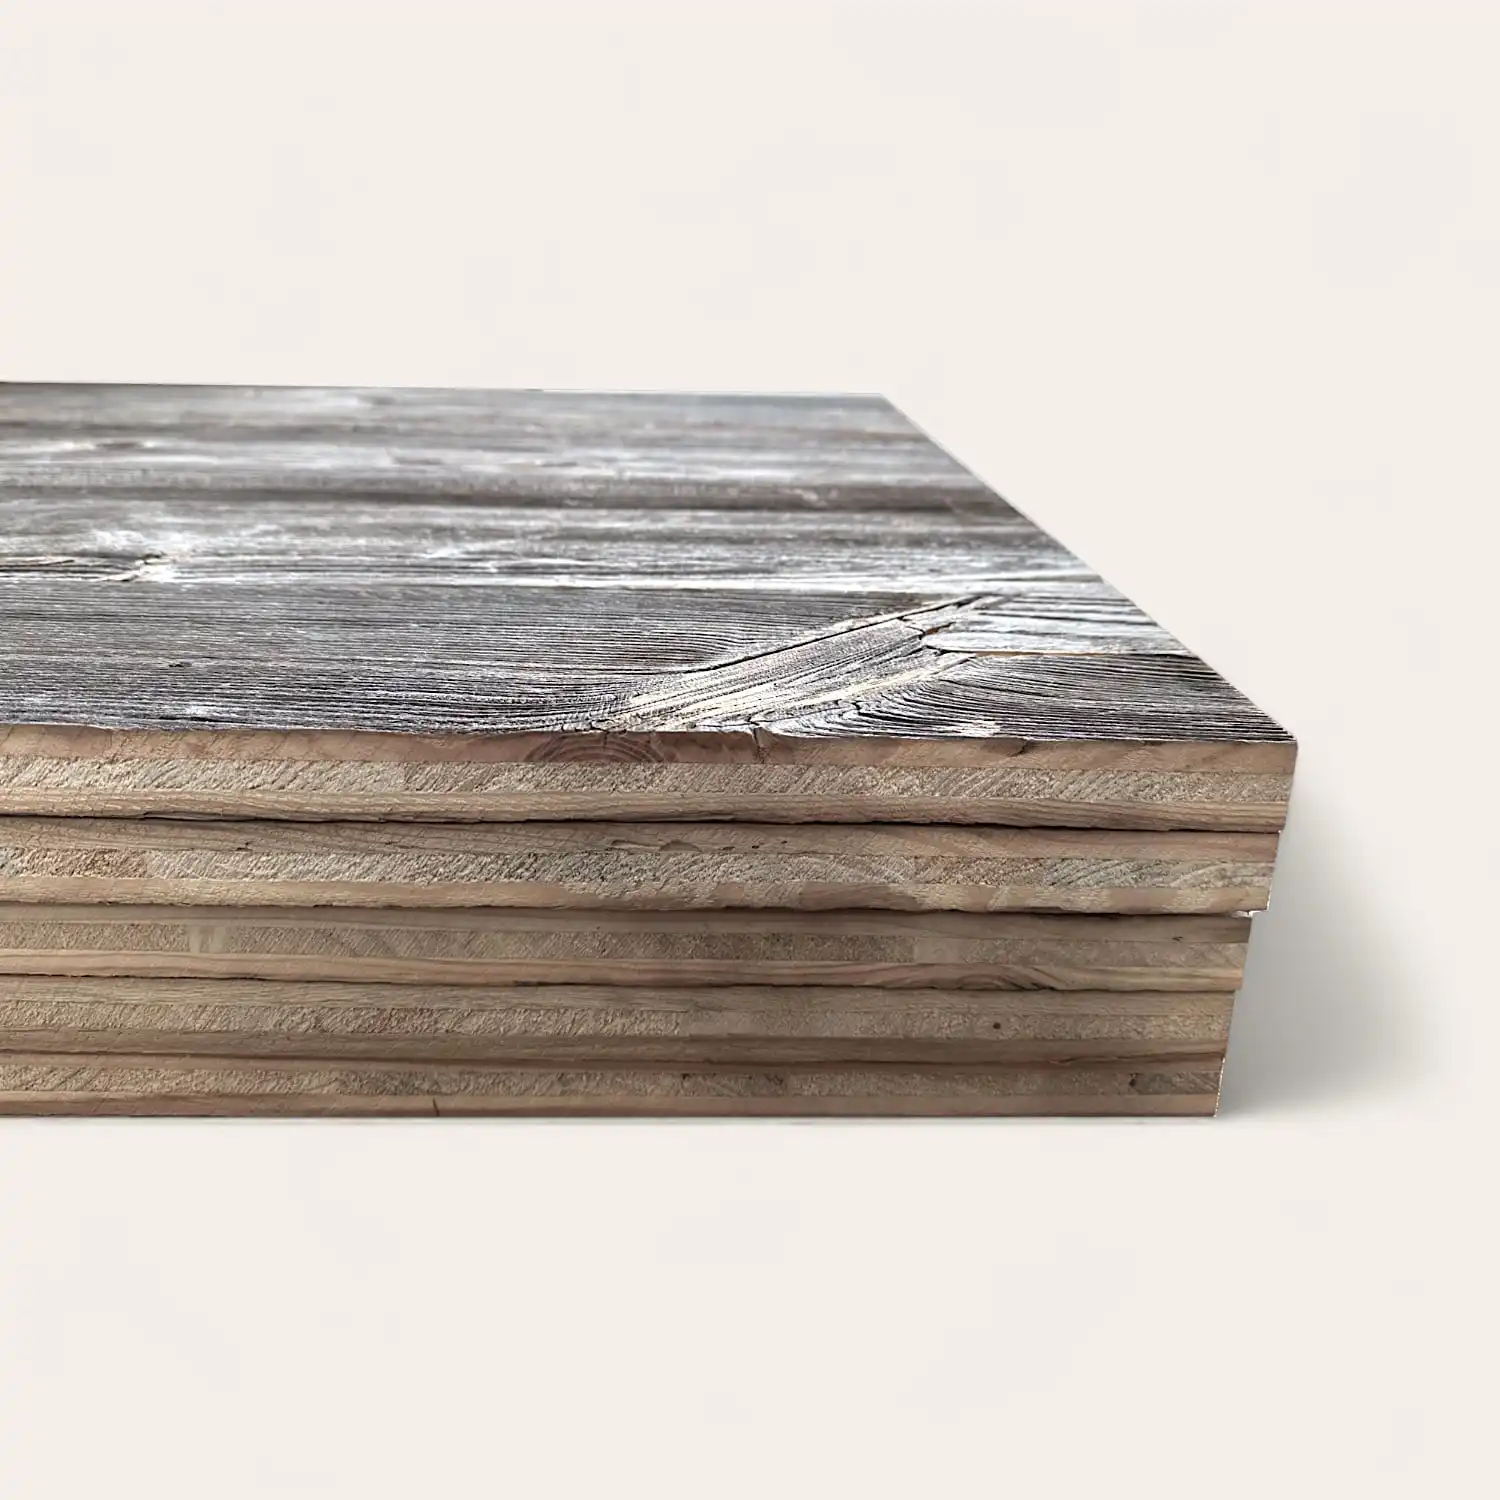  Empilement de planches de bois lamellé avec une surface grise texturée, affichée sur un fond clair uni, ressemblant à un panneau 3 plis vieux bois. 